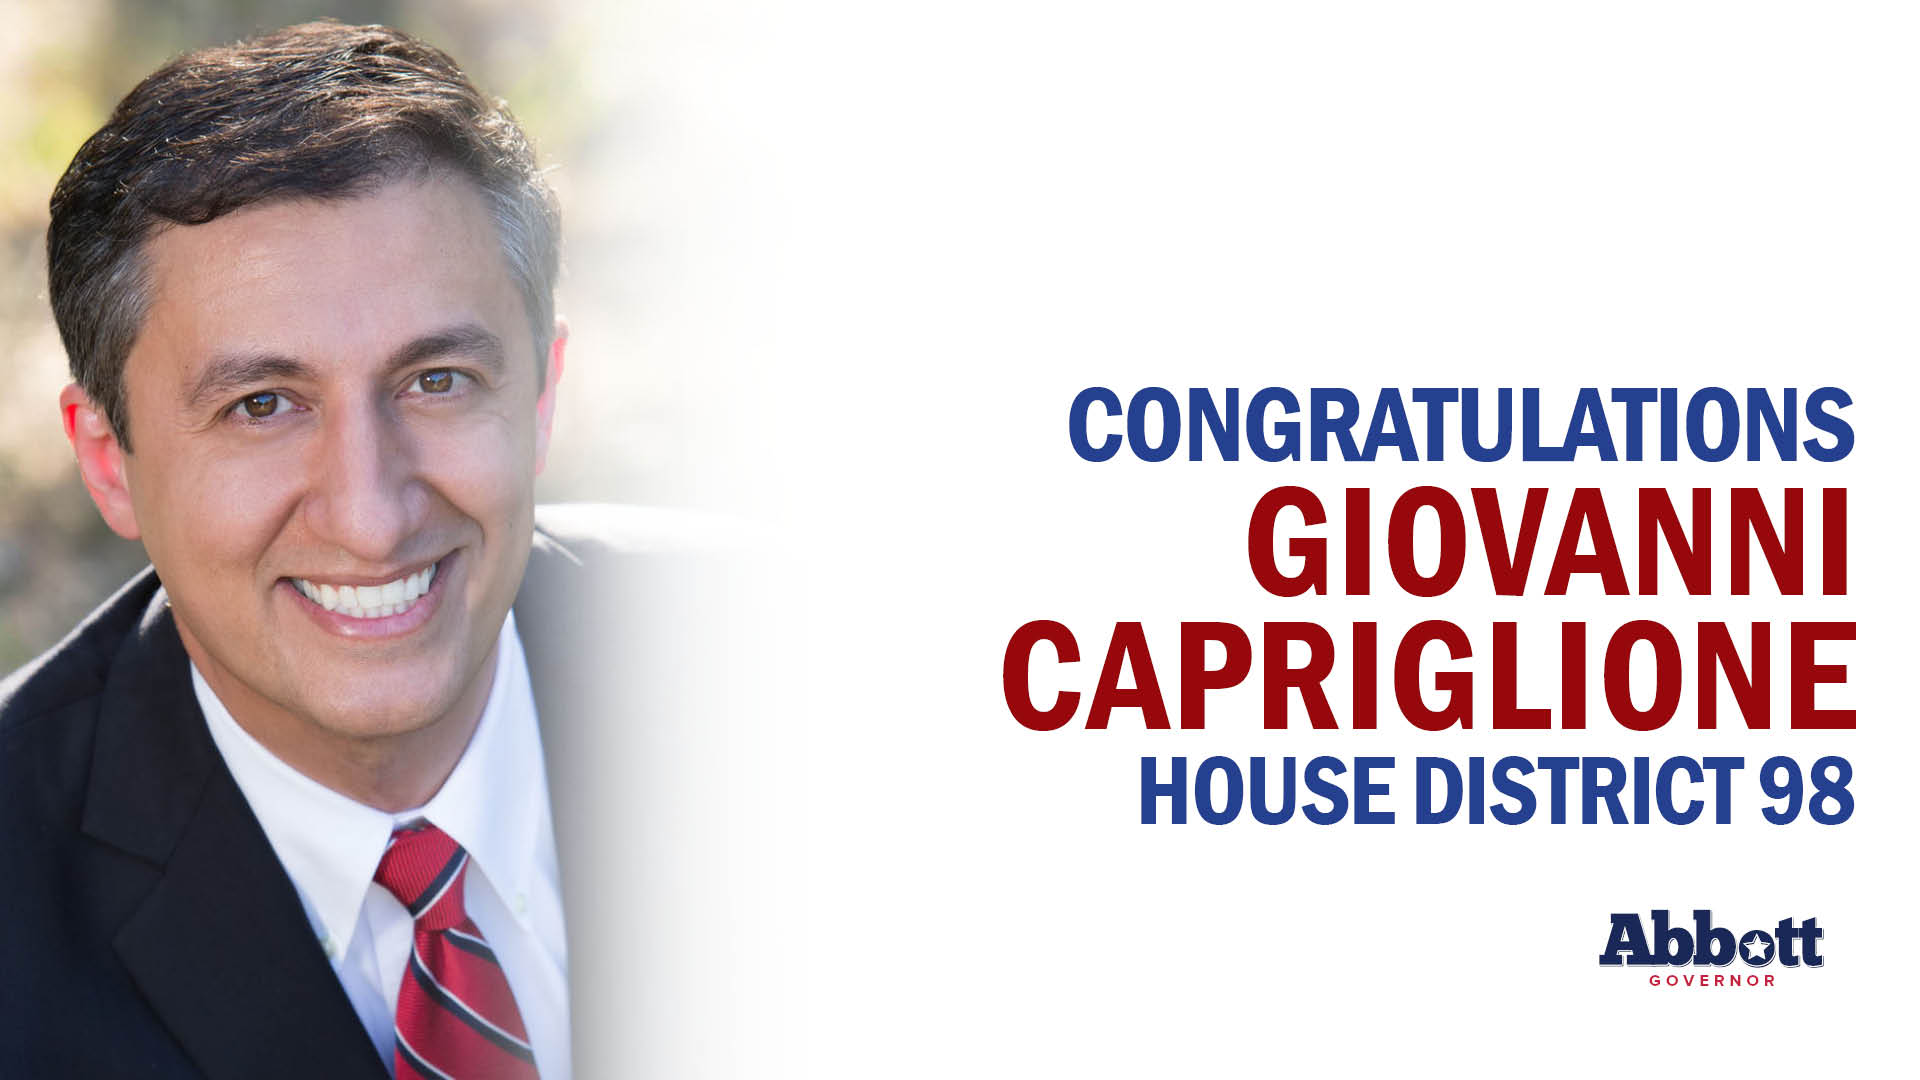 Governor Abbott Congratulates Rep. Giovanni Capriglione On Election Night Victory